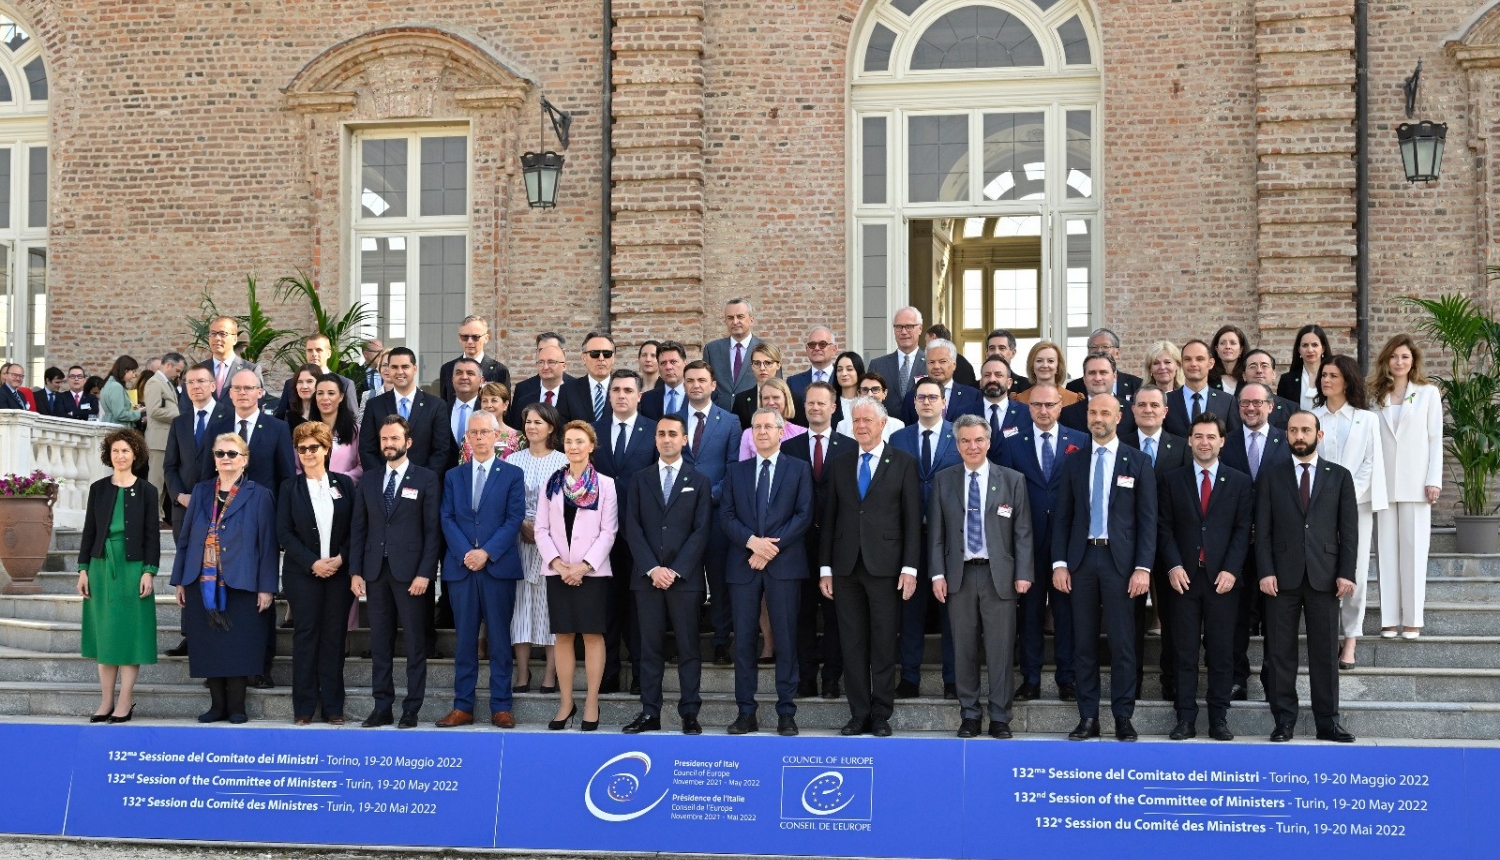 ārlietu ministrs Edgars Rinkēvičs Itālijas pilsētā Turīnā piedalījās Eiropas Padomes Ministru komitejas 132. sesijā